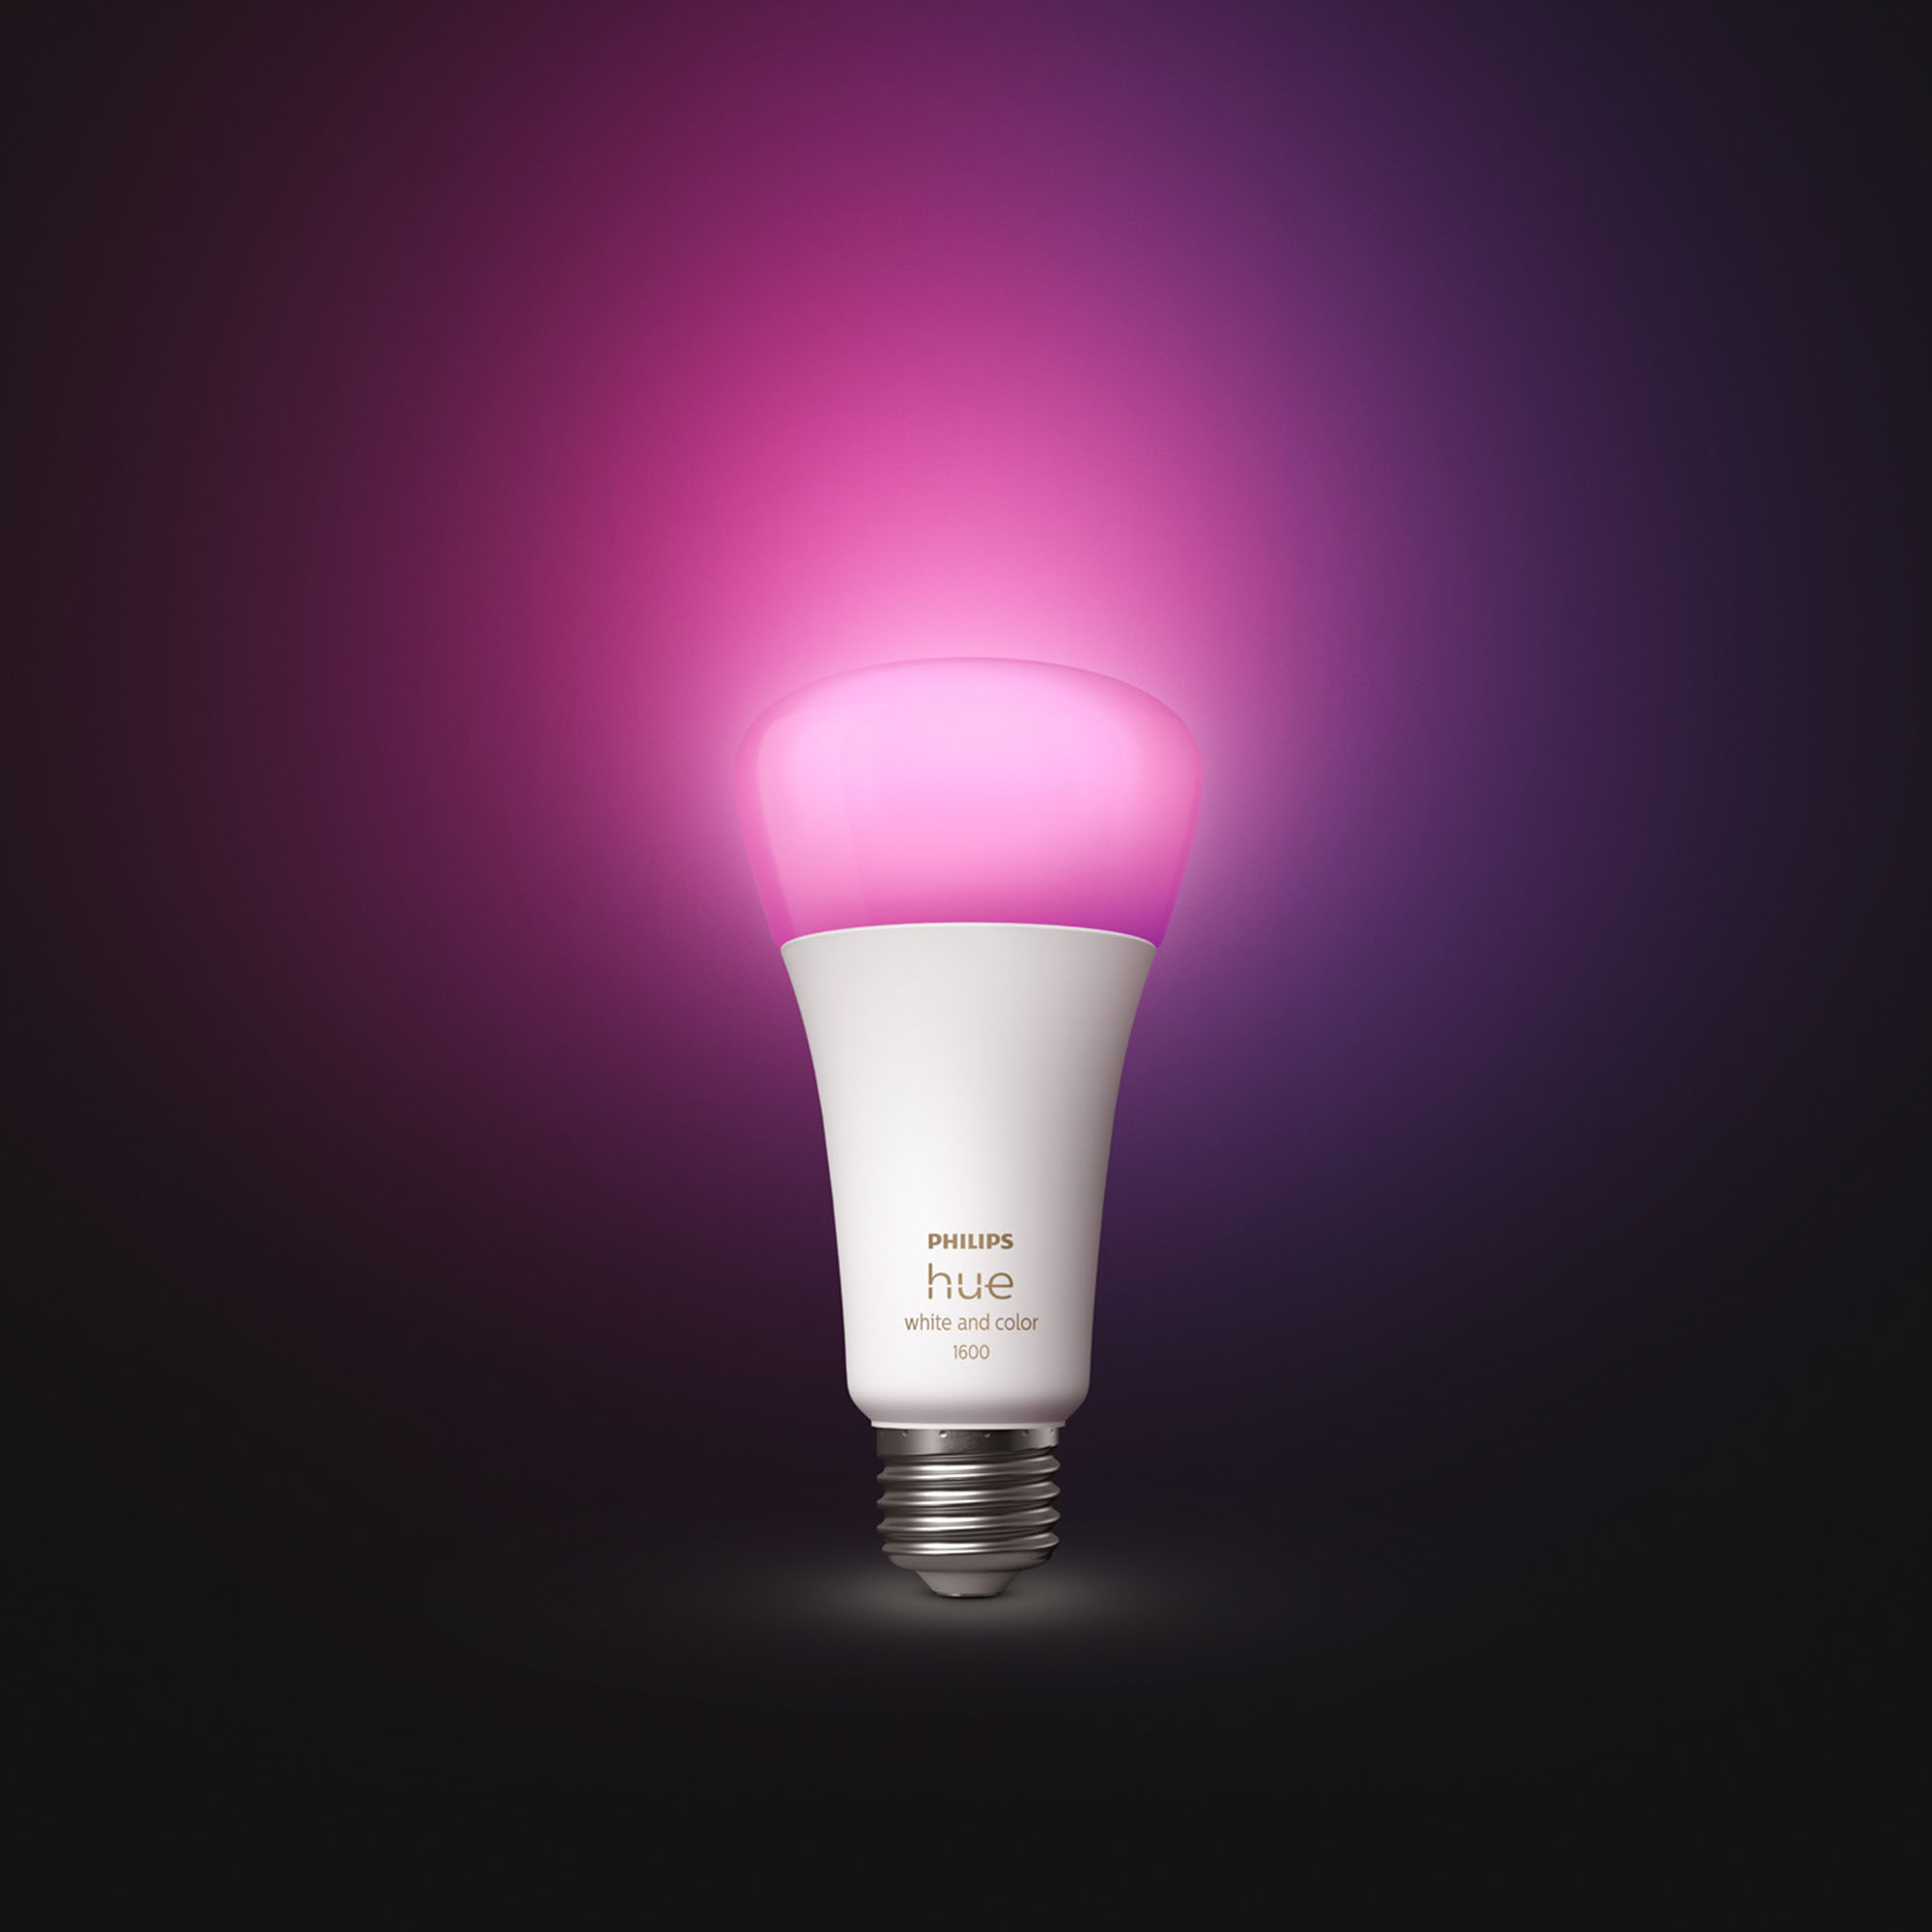 Philips Hue White, ampoule LED connectée E27 100W, 1600 lumen